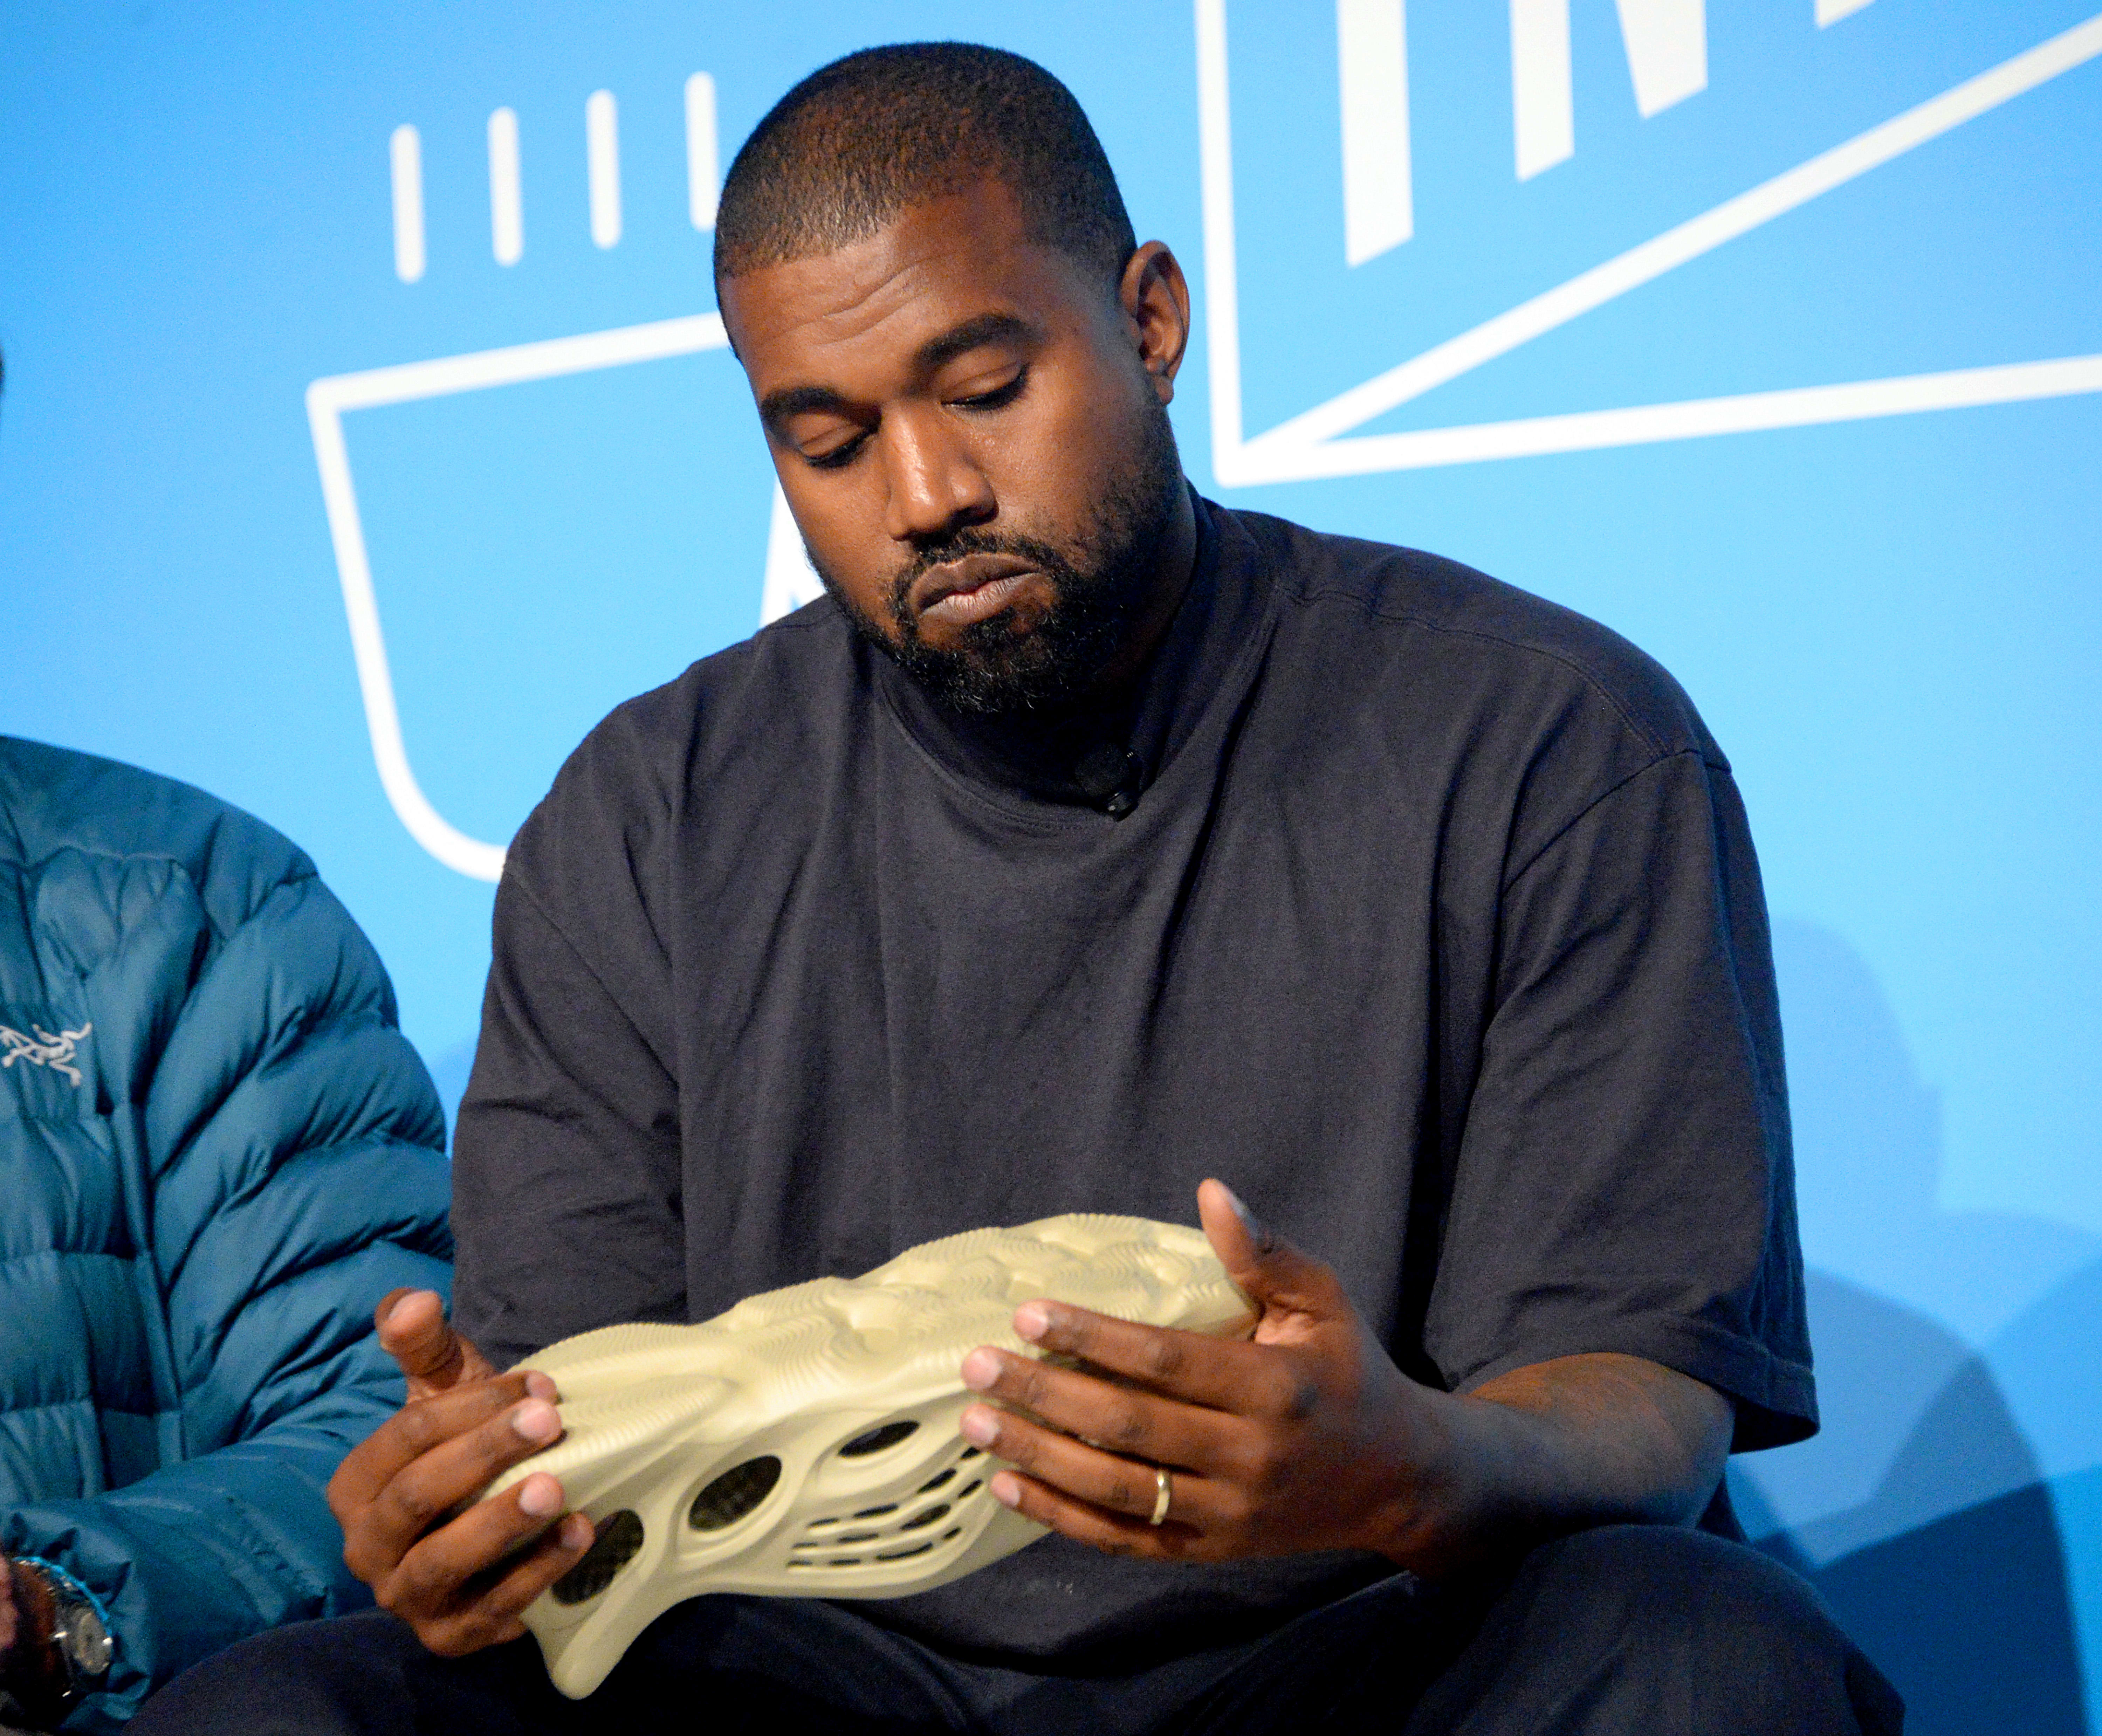 Kanye West Yeezy Foam Runner Crocs Algae Medial